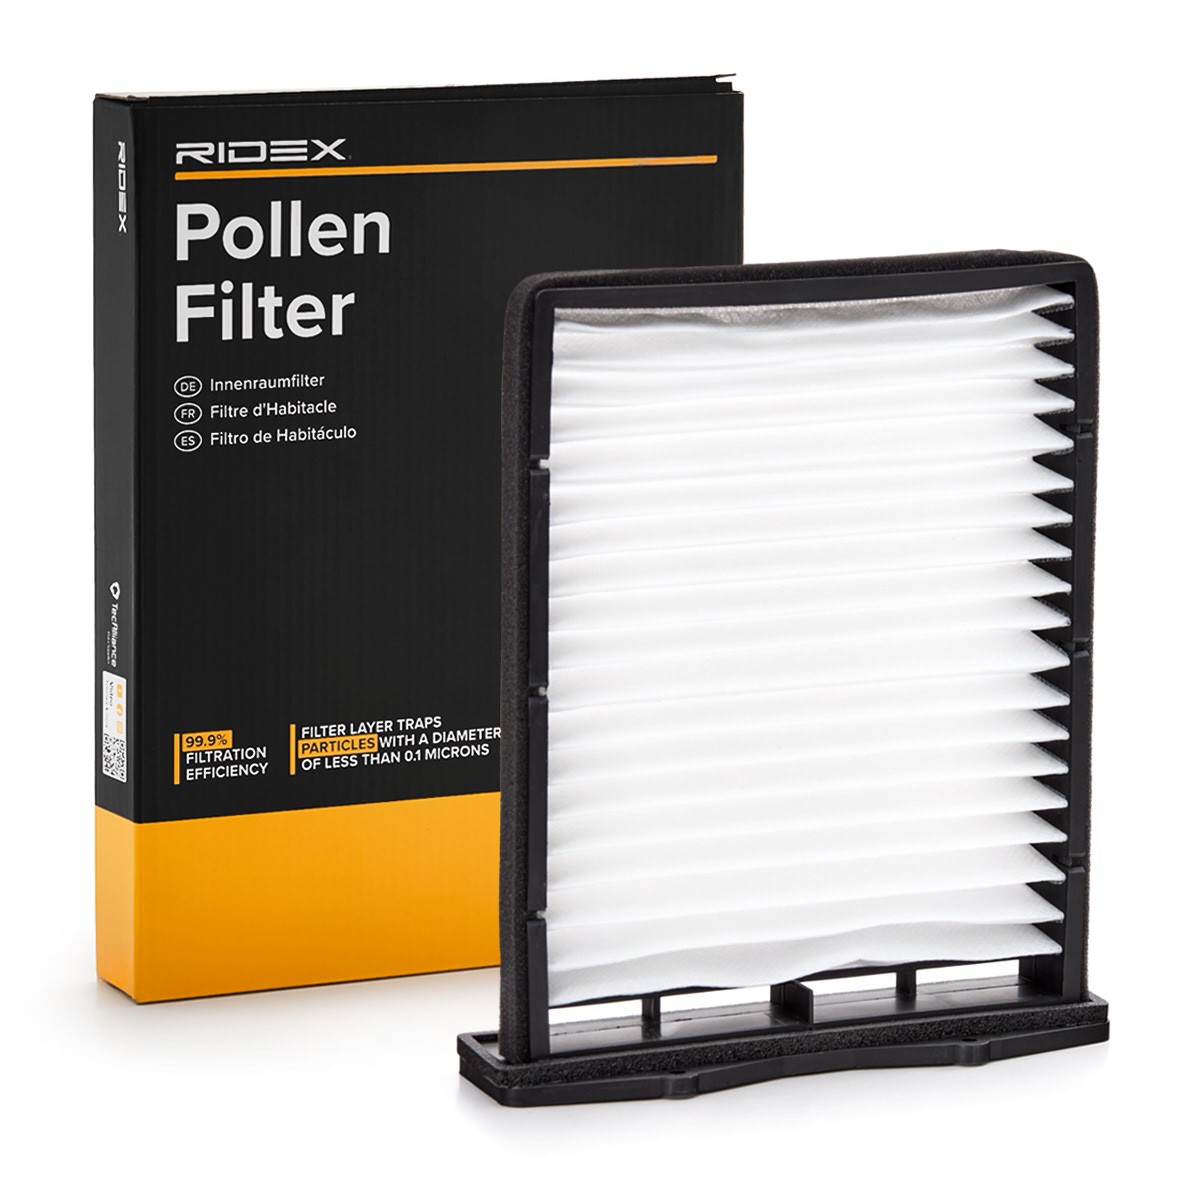 RIDEX 424I0305 Pollen filter Particulate Filter, 244 mm x 219 mm x 34 mm